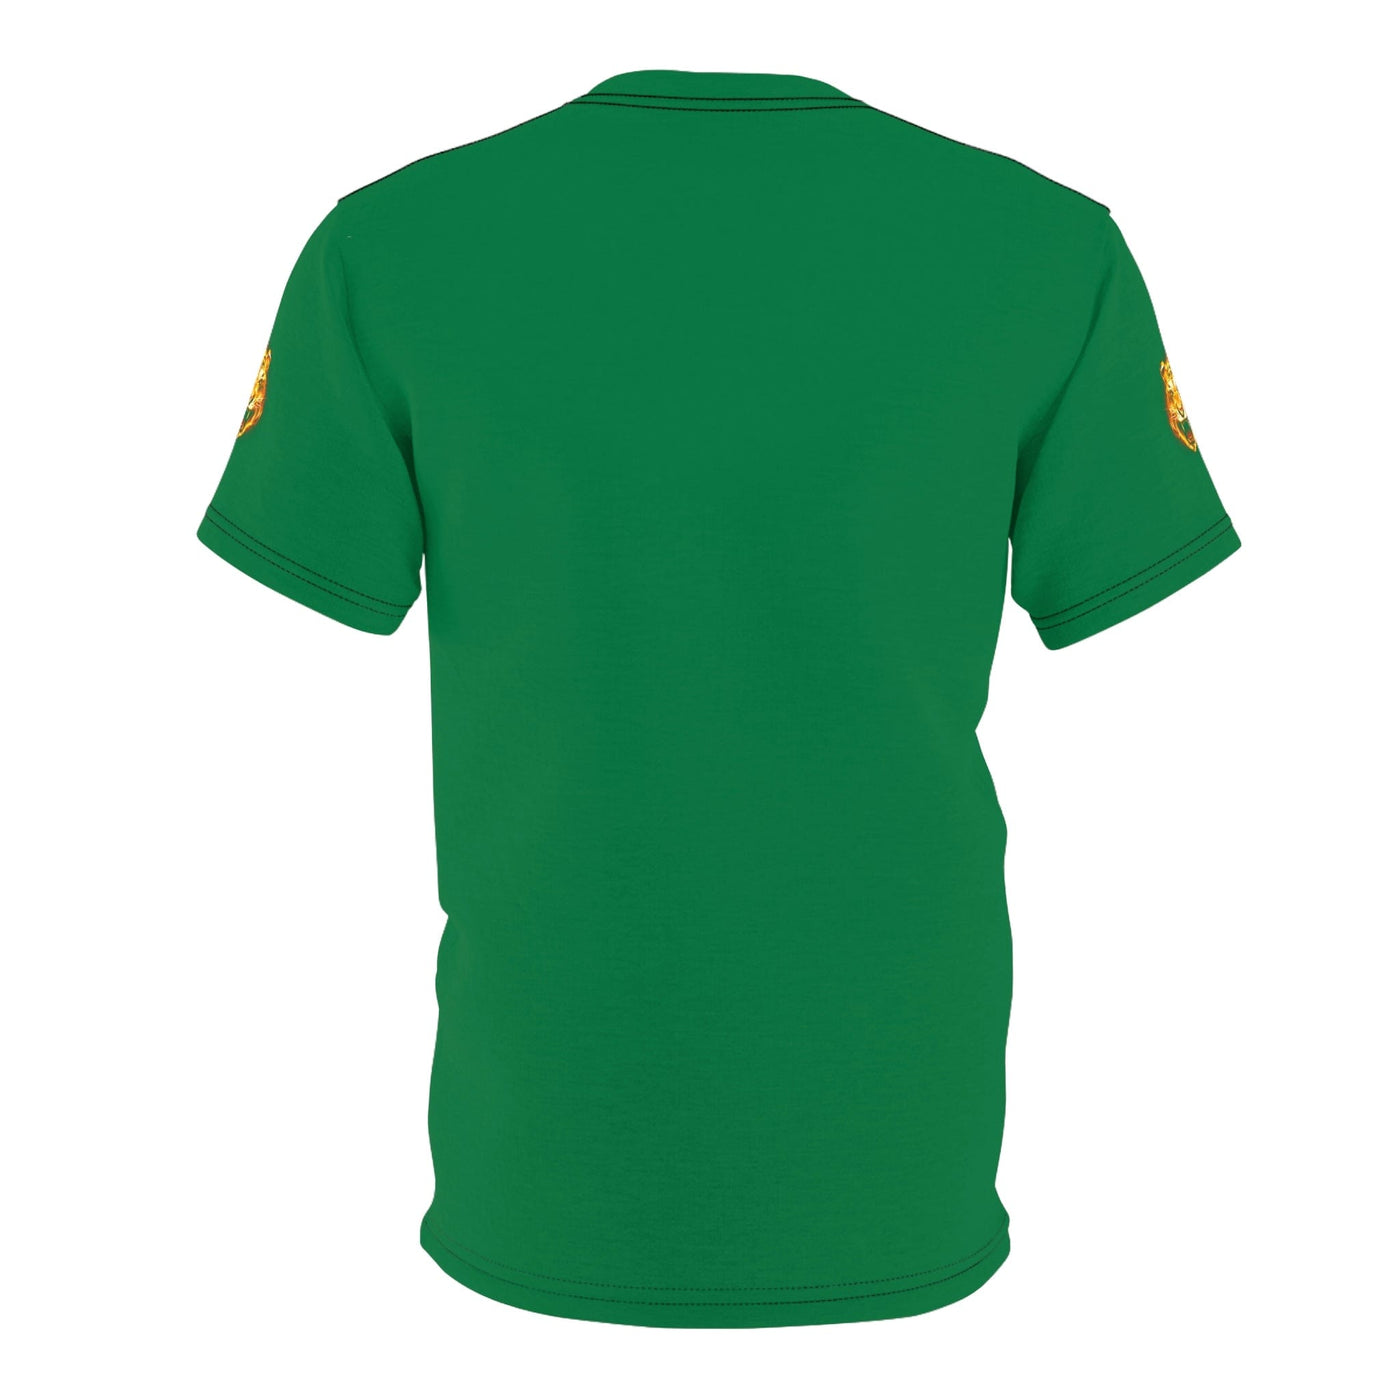 The All Premium Irish Green Tiger World Unisex Cut & Sew T-Shirt